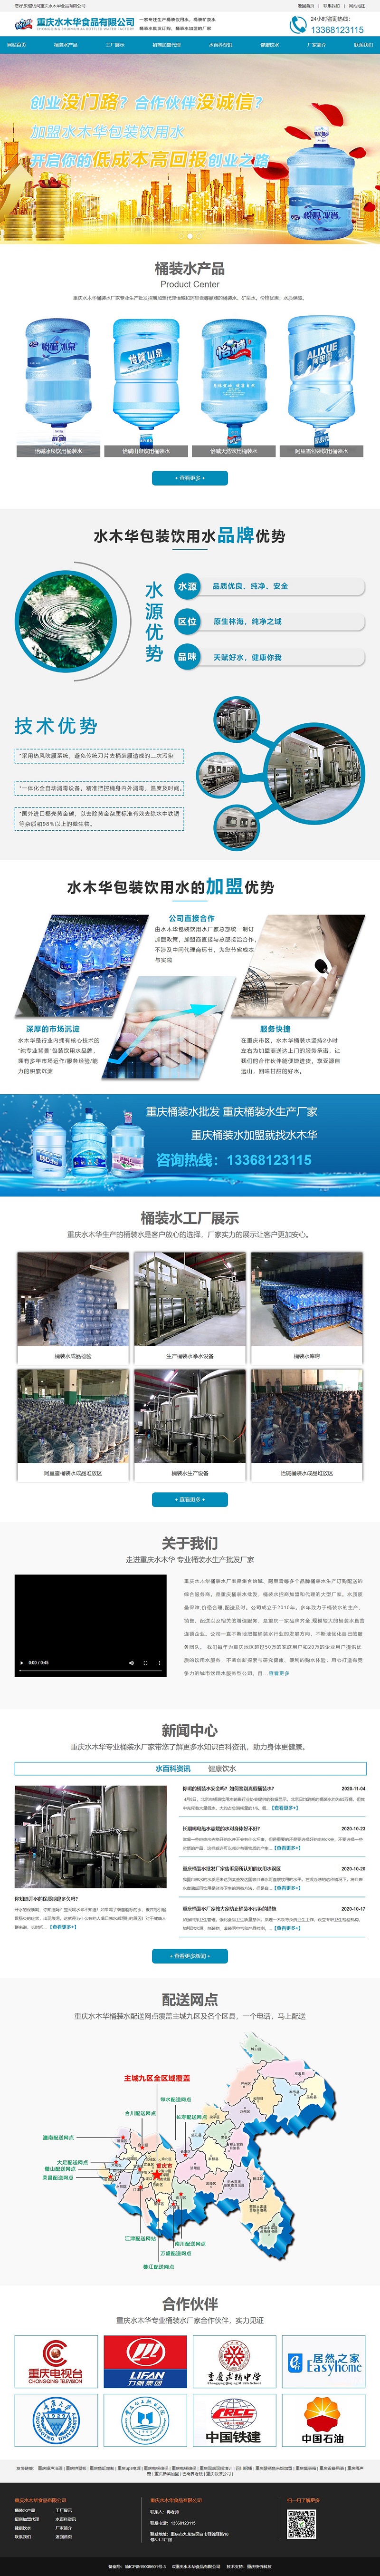 重庆水木华桶装水批发网站建设案